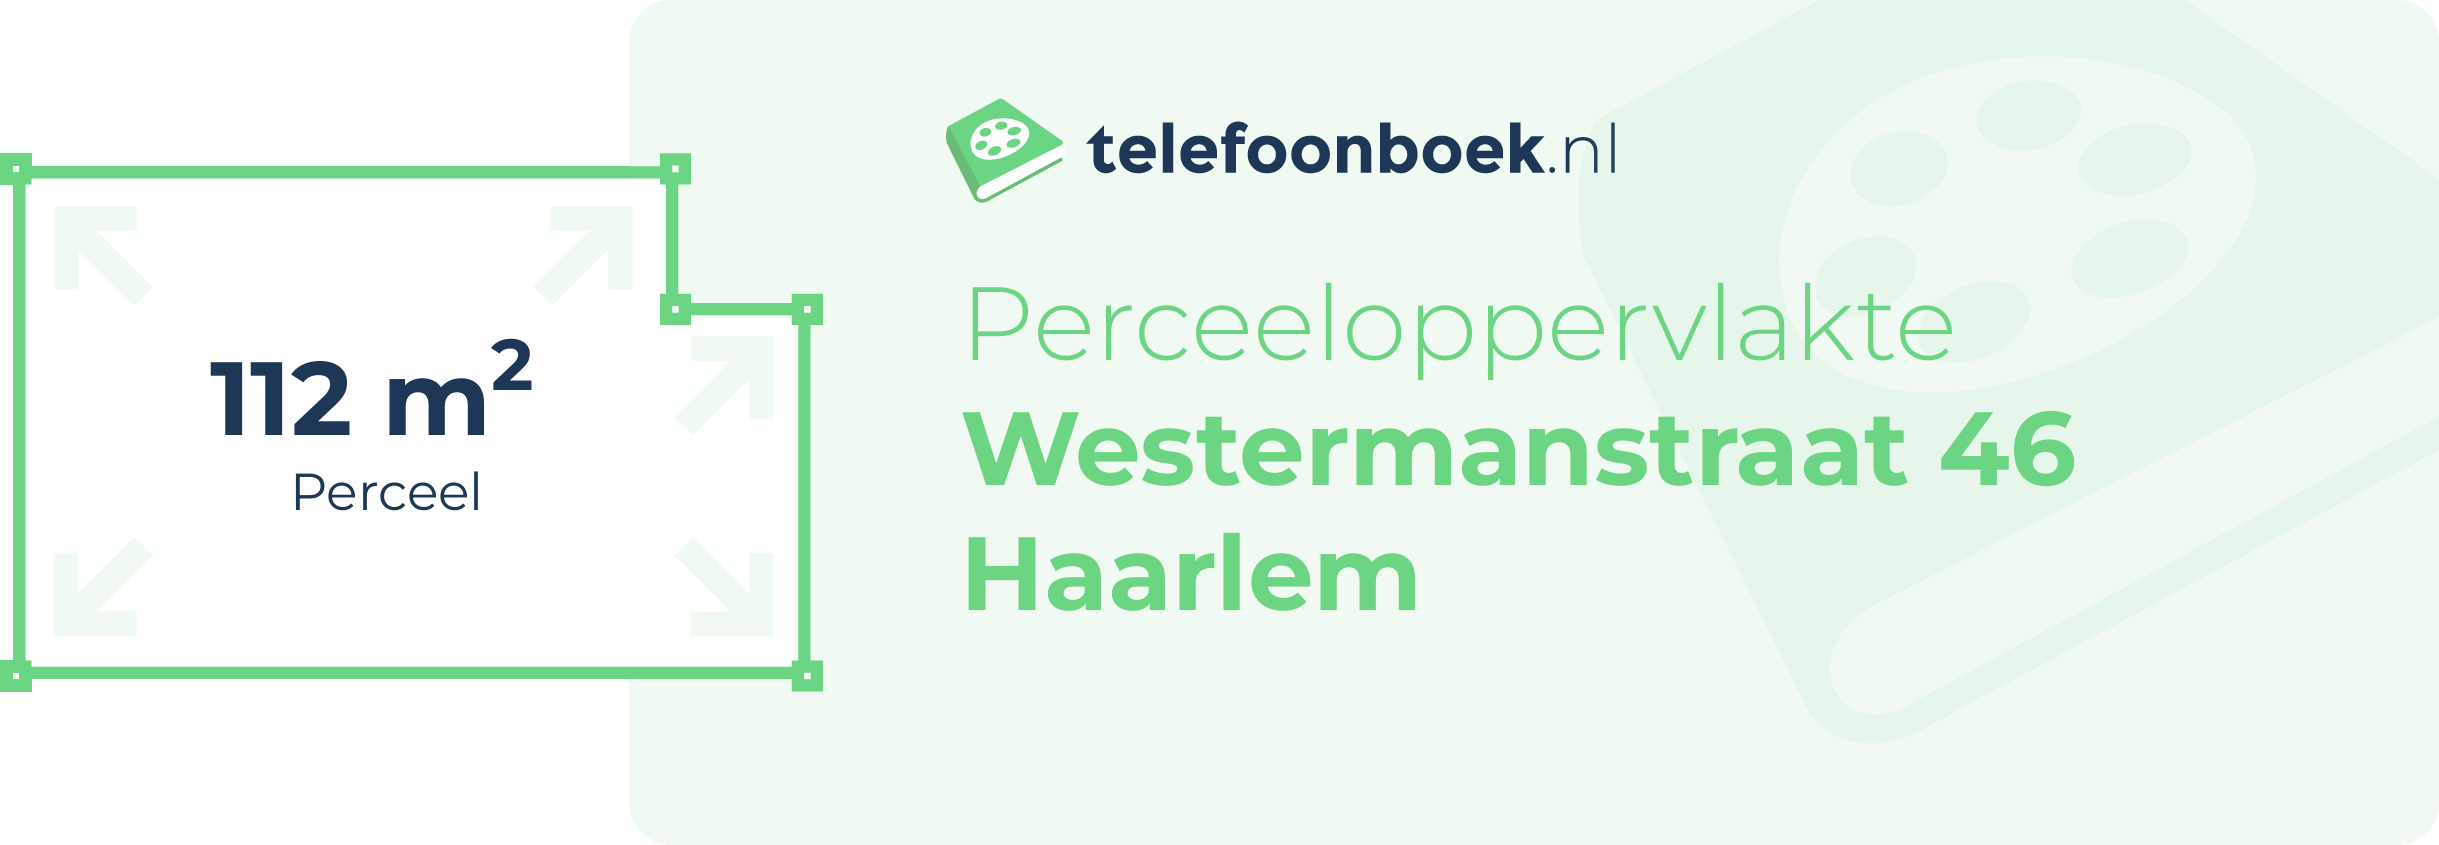 Perceeloppervlakte Westermanstraat 46 Haarlem